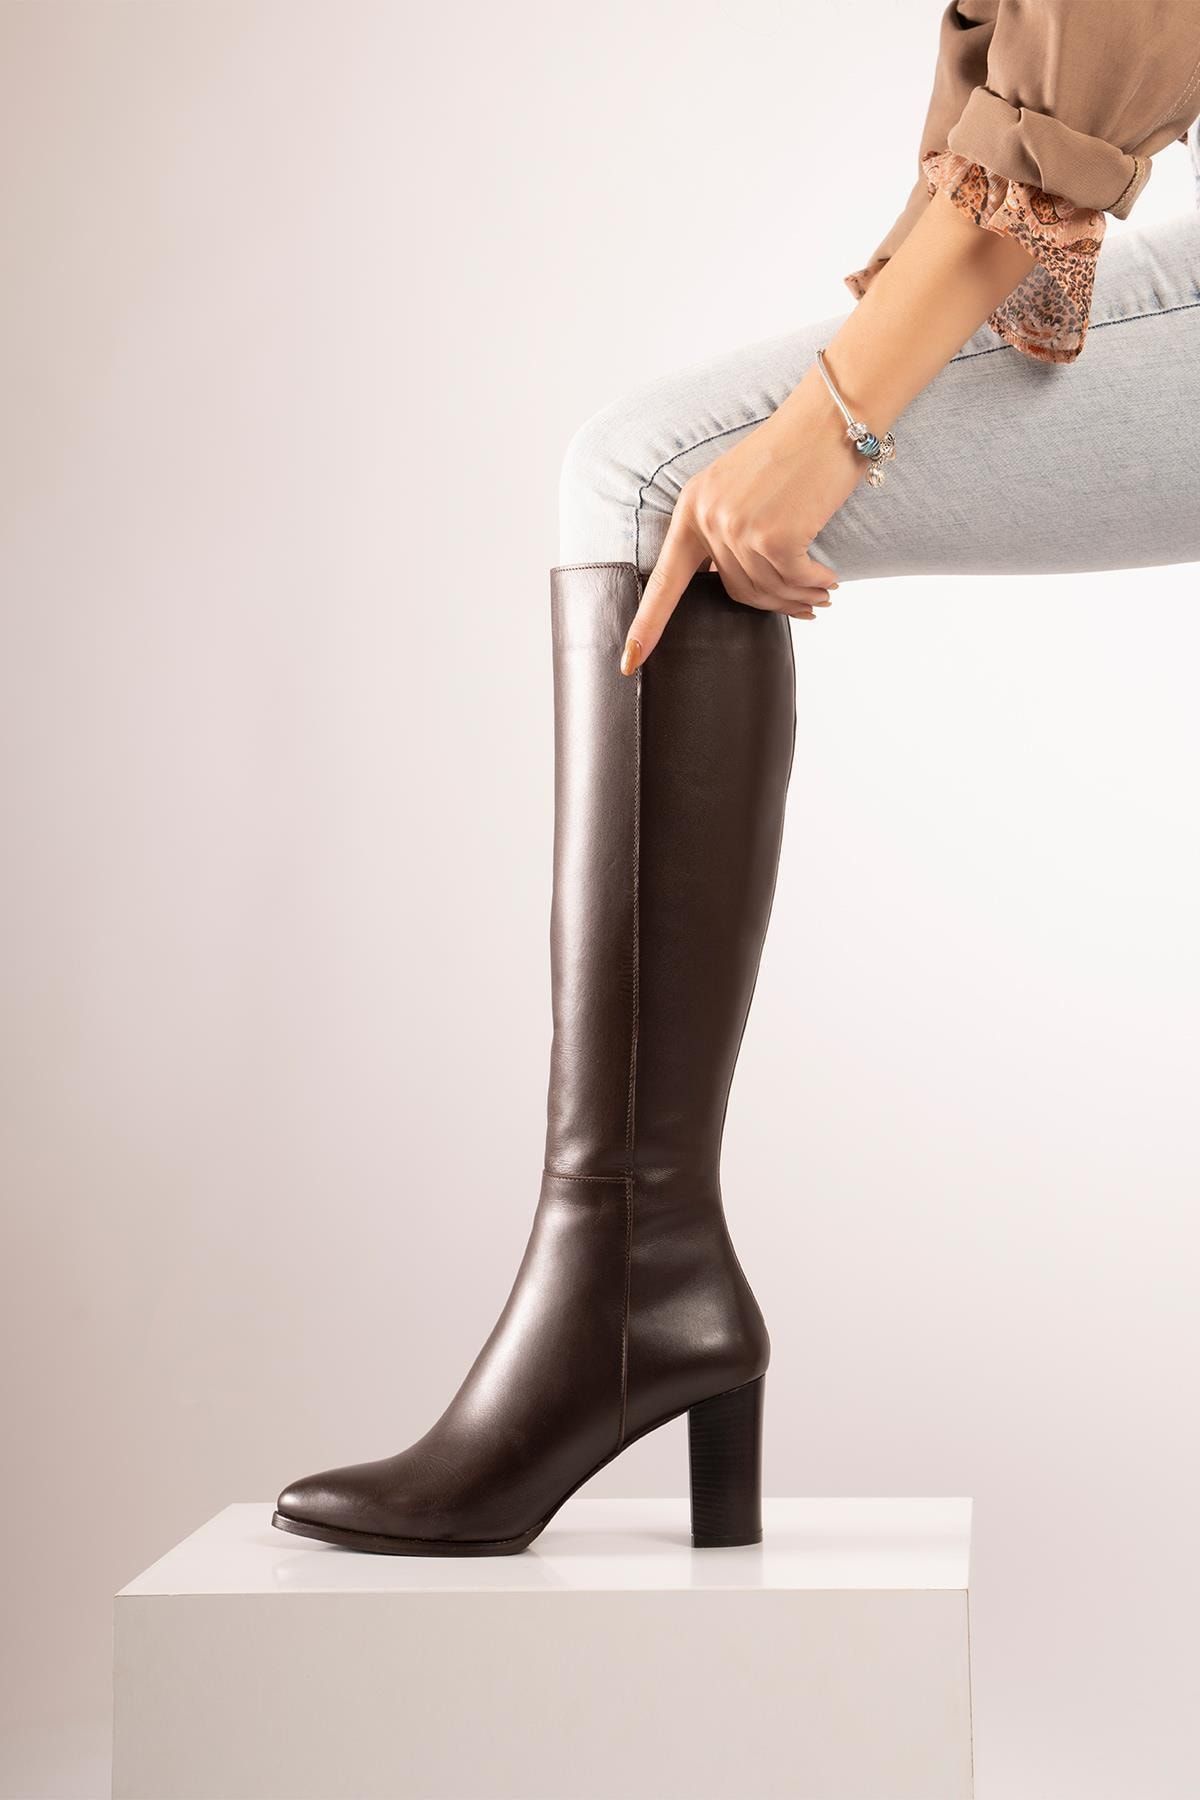 CZ London Kadın Kahverengi Hakiki Deri  Sivri Burun Fermuarlı Uzun Boy Topuklu Çizme